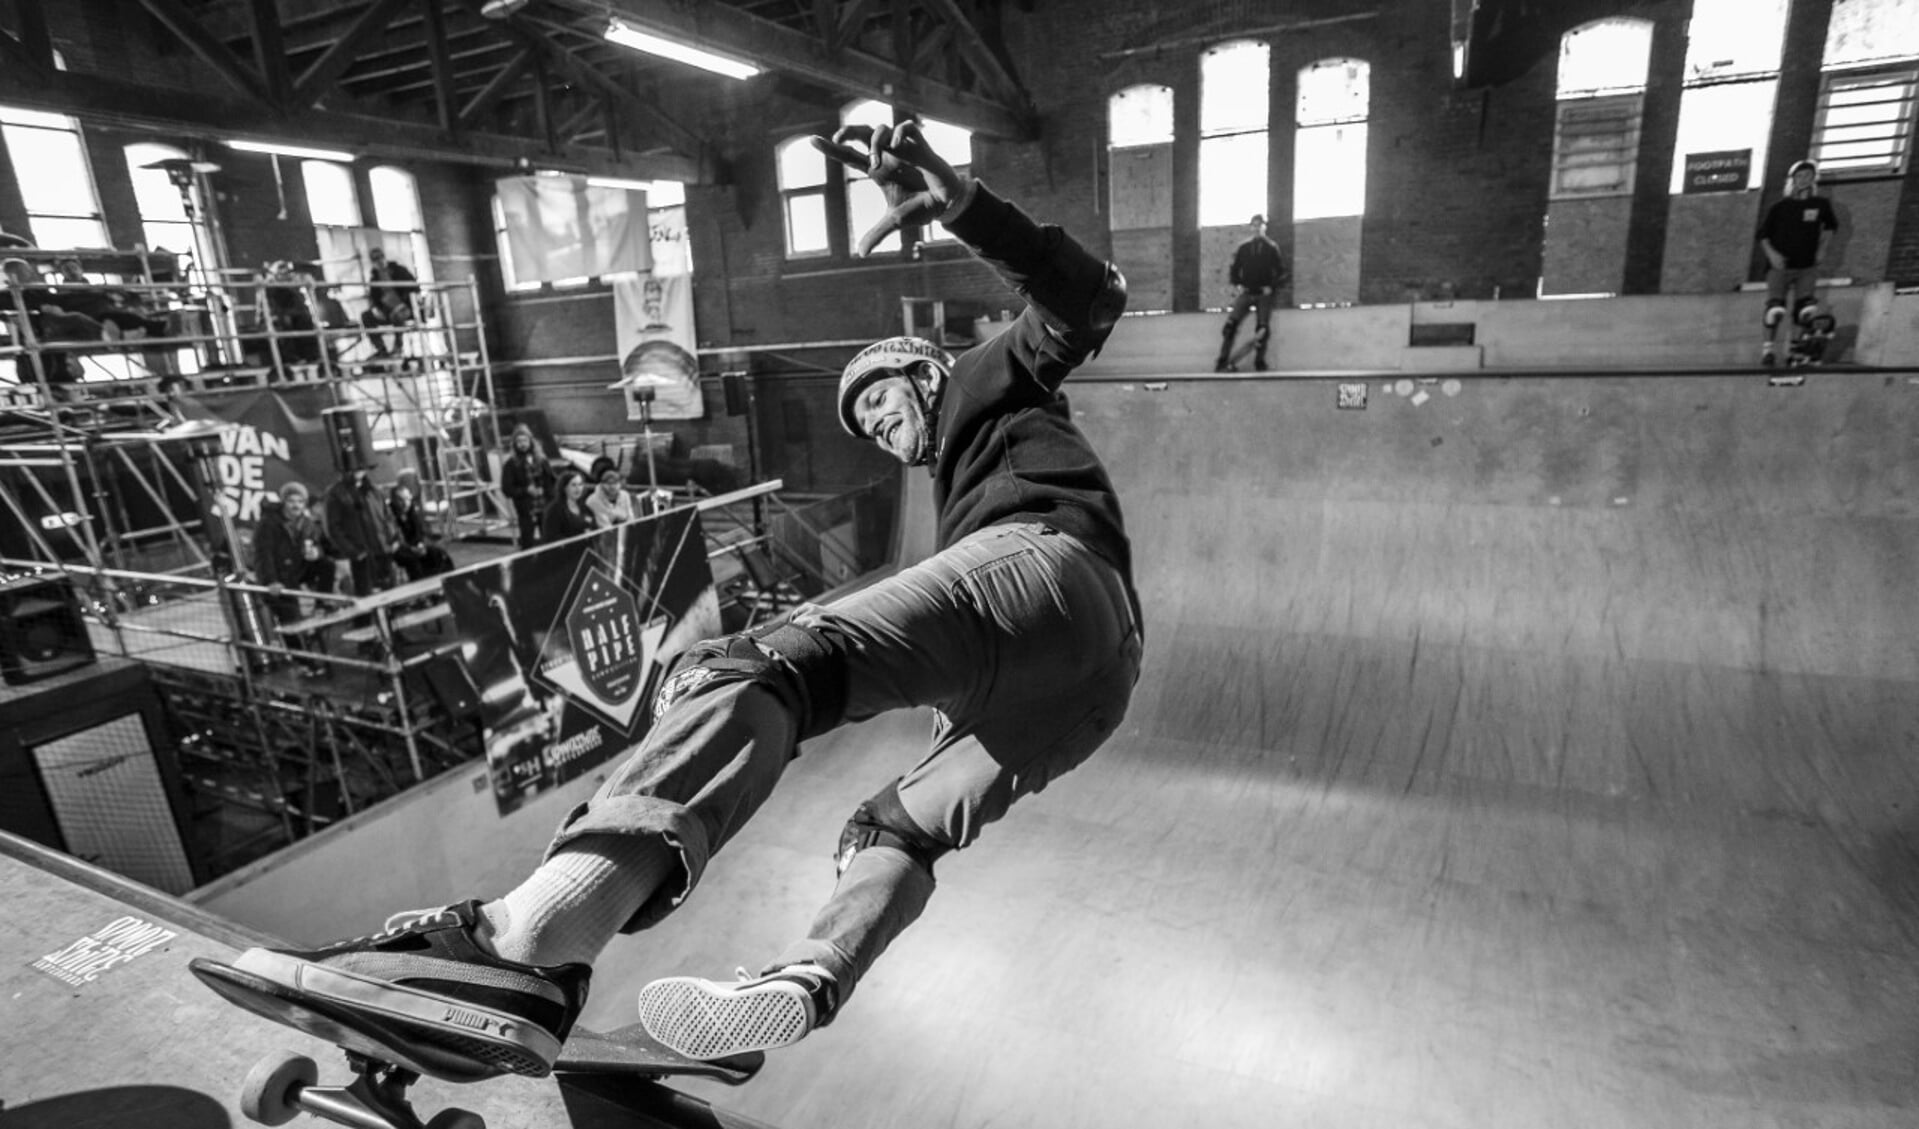 De skateboard-docu KICK/PUSH draait om de opkomst van de skateboardscene en het strijden voor een eigen plek.